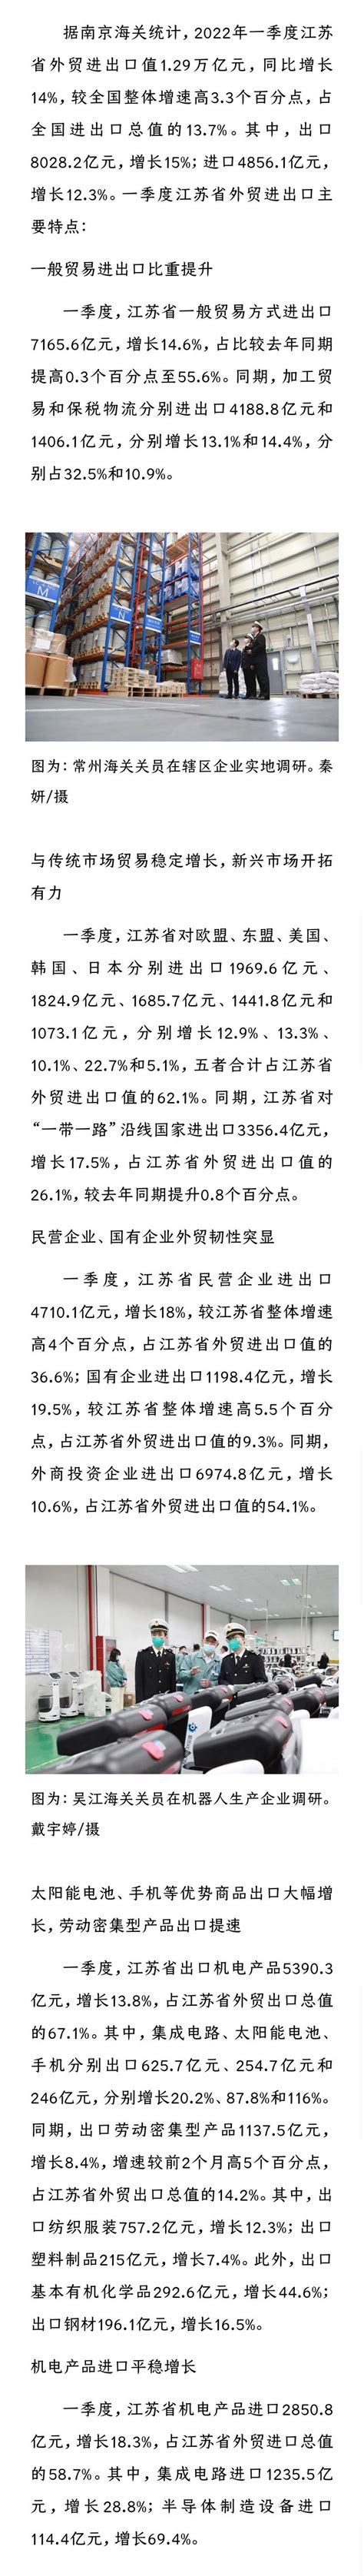 一季度江苏省外贸进出口增长14%